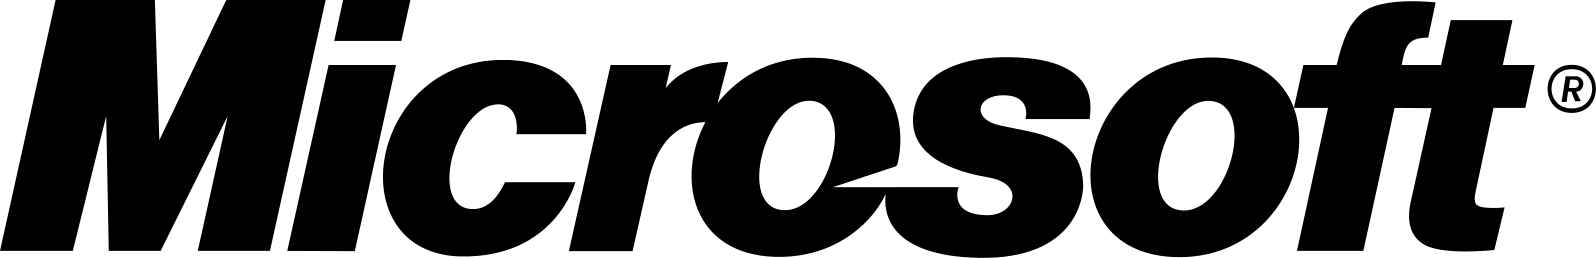 Microsoft Logo in 1987